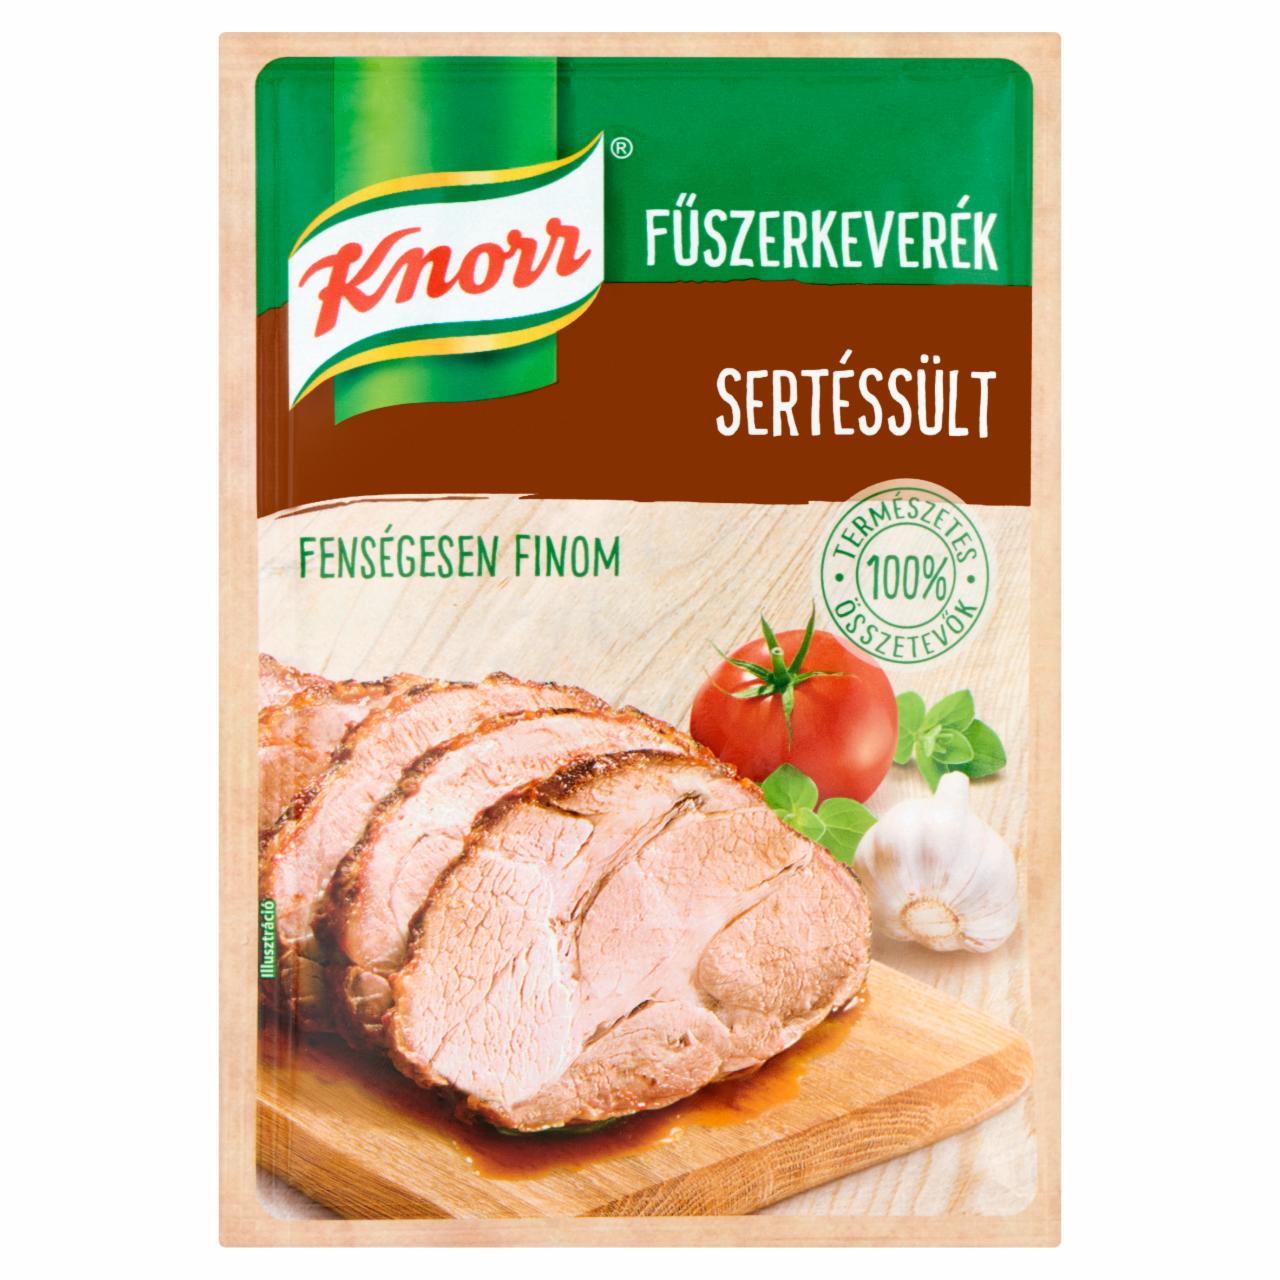 Képek - Knorr sertéssült fűszerkeverék 35 g